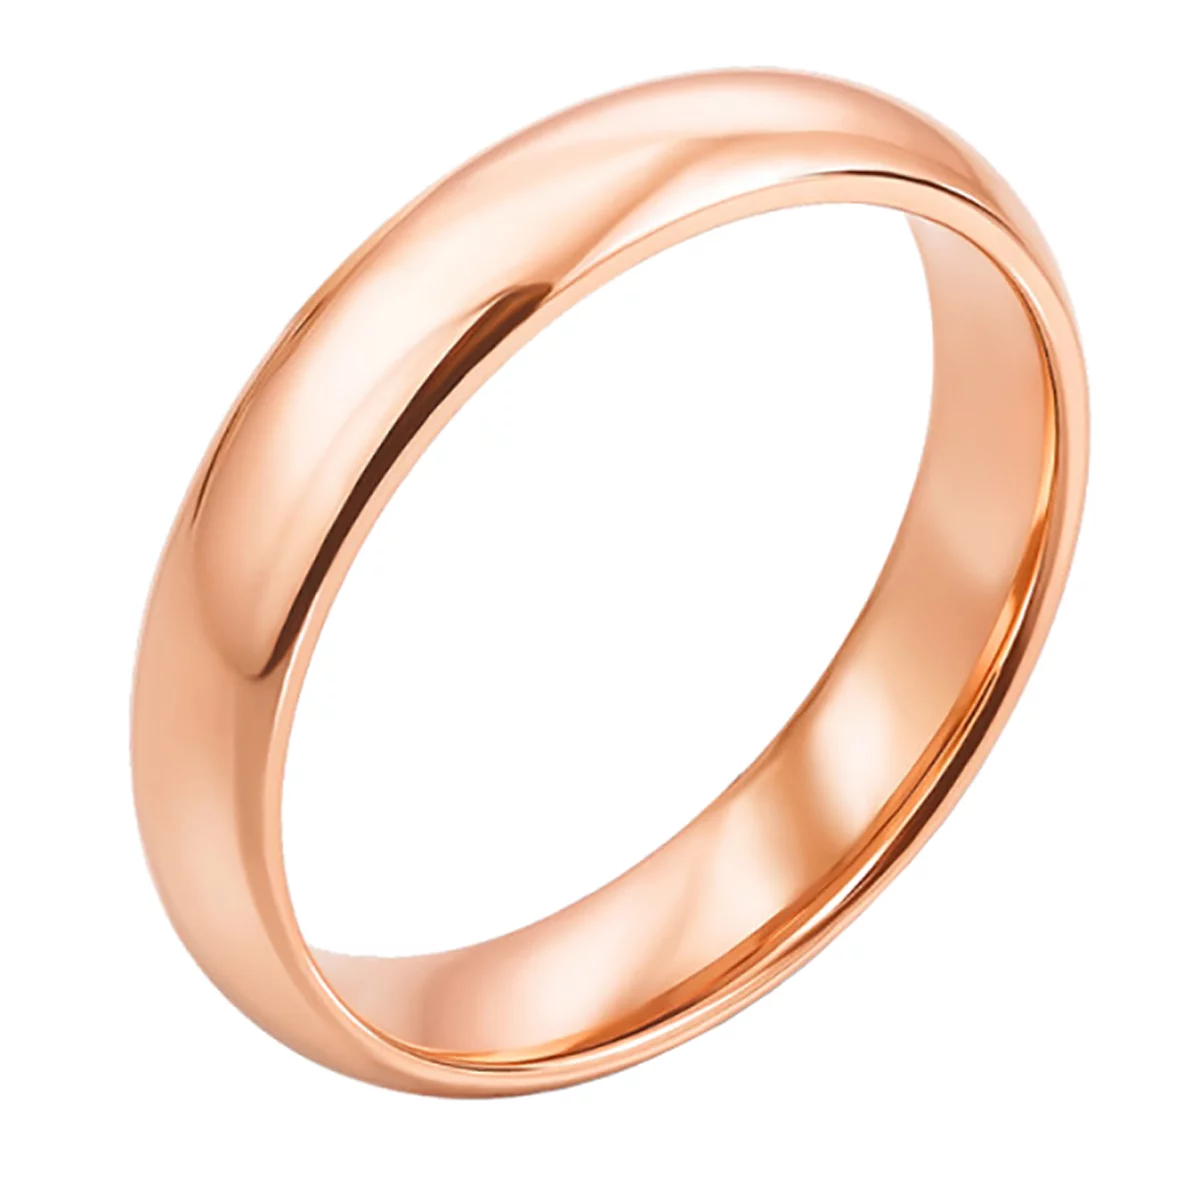 Обручальное кольцо классическое Комфорт из красного золота. Артикул 10171: цена, отзывы, фото – купить в интернет-магазине AURUM